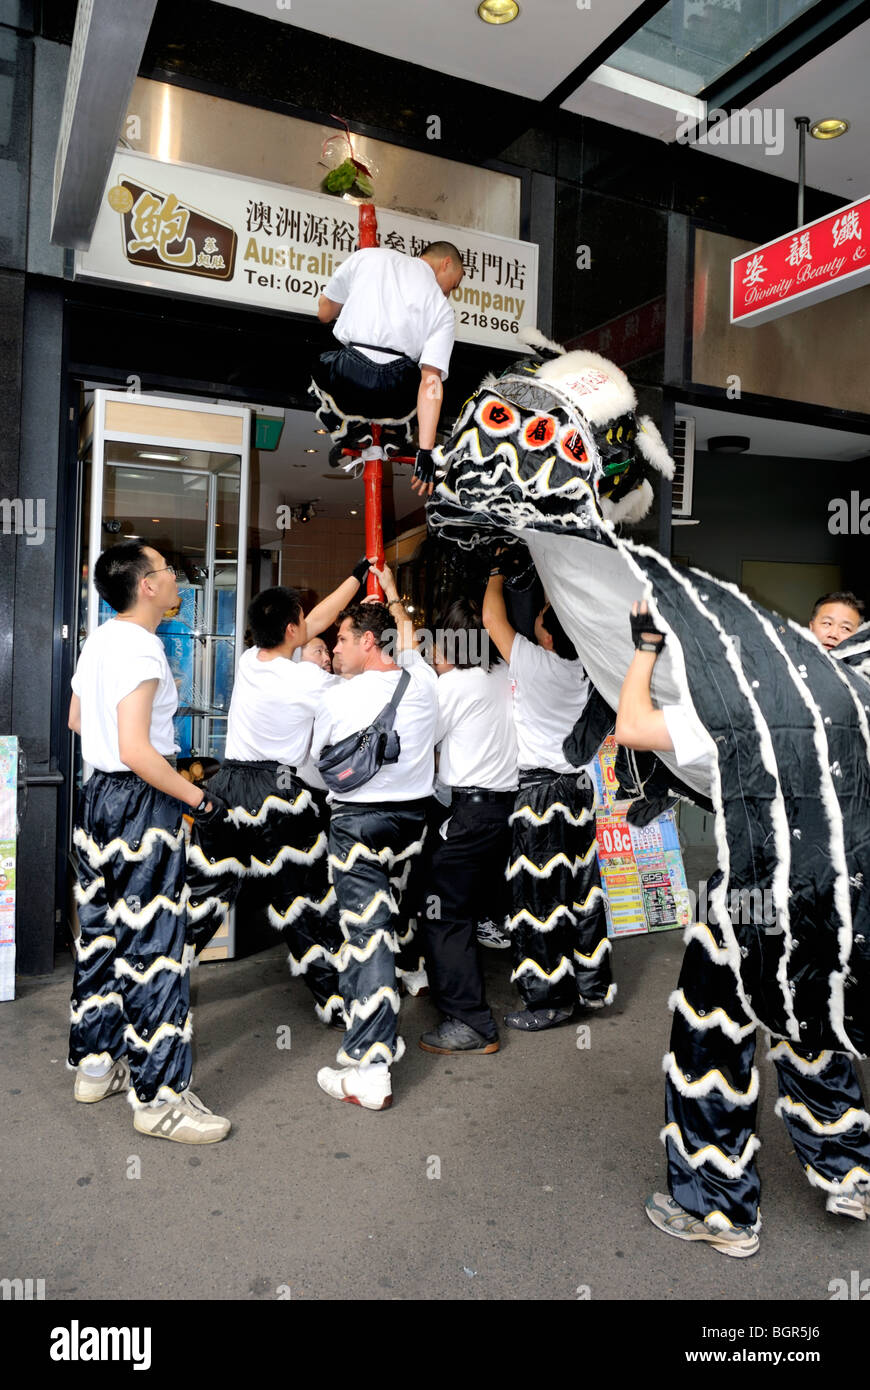 Une danse du lion chinois devant les boutiques dans le quartier chinois de Sydney. Veuillez cliquer ici pour plus de détails. Banque D'Images